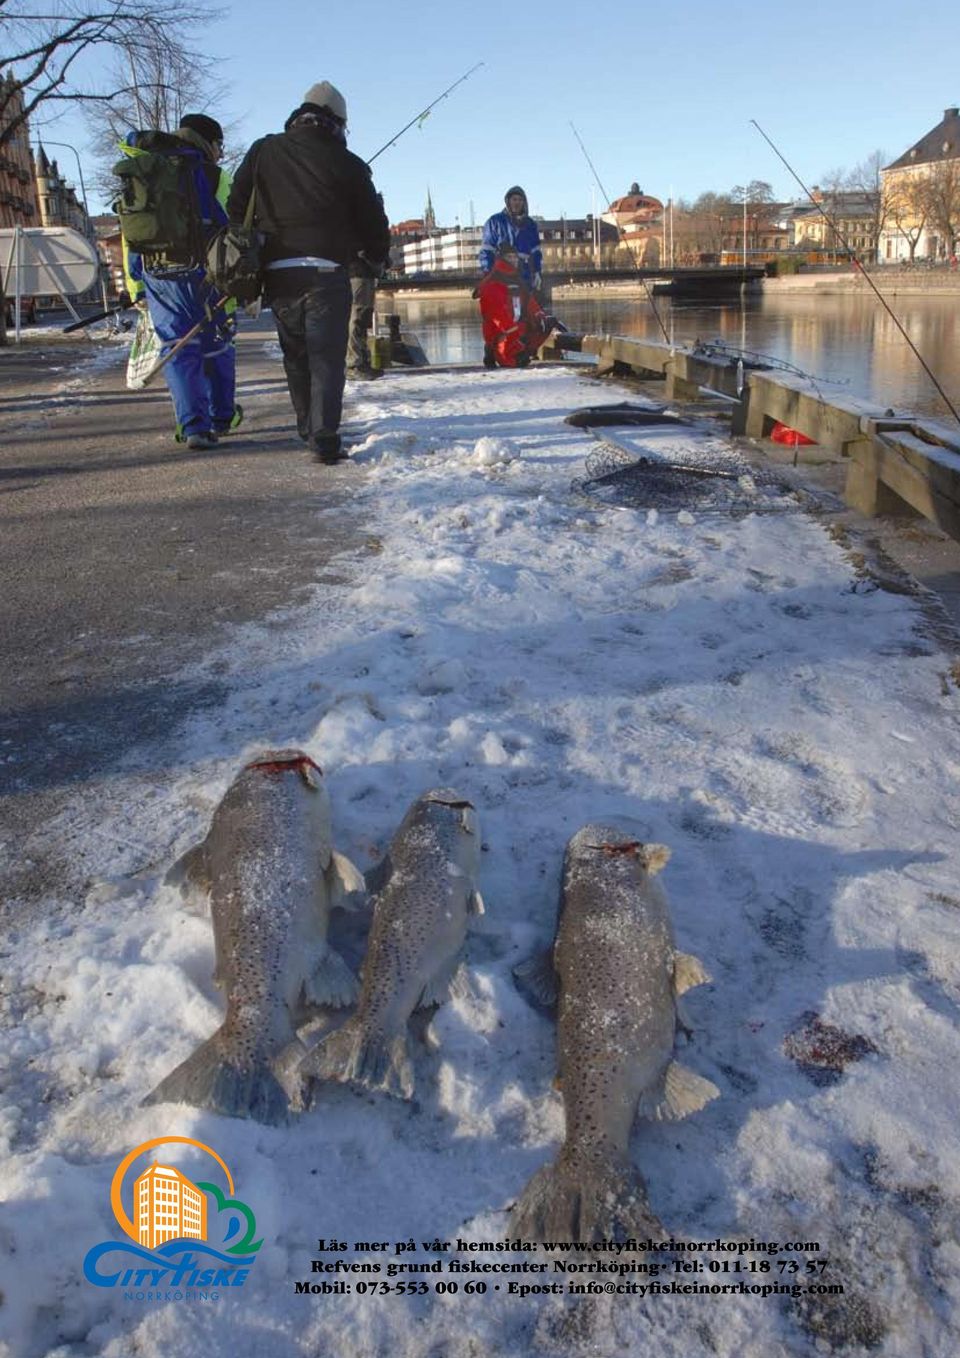 com Refvens grund fiskecenter Norrköping